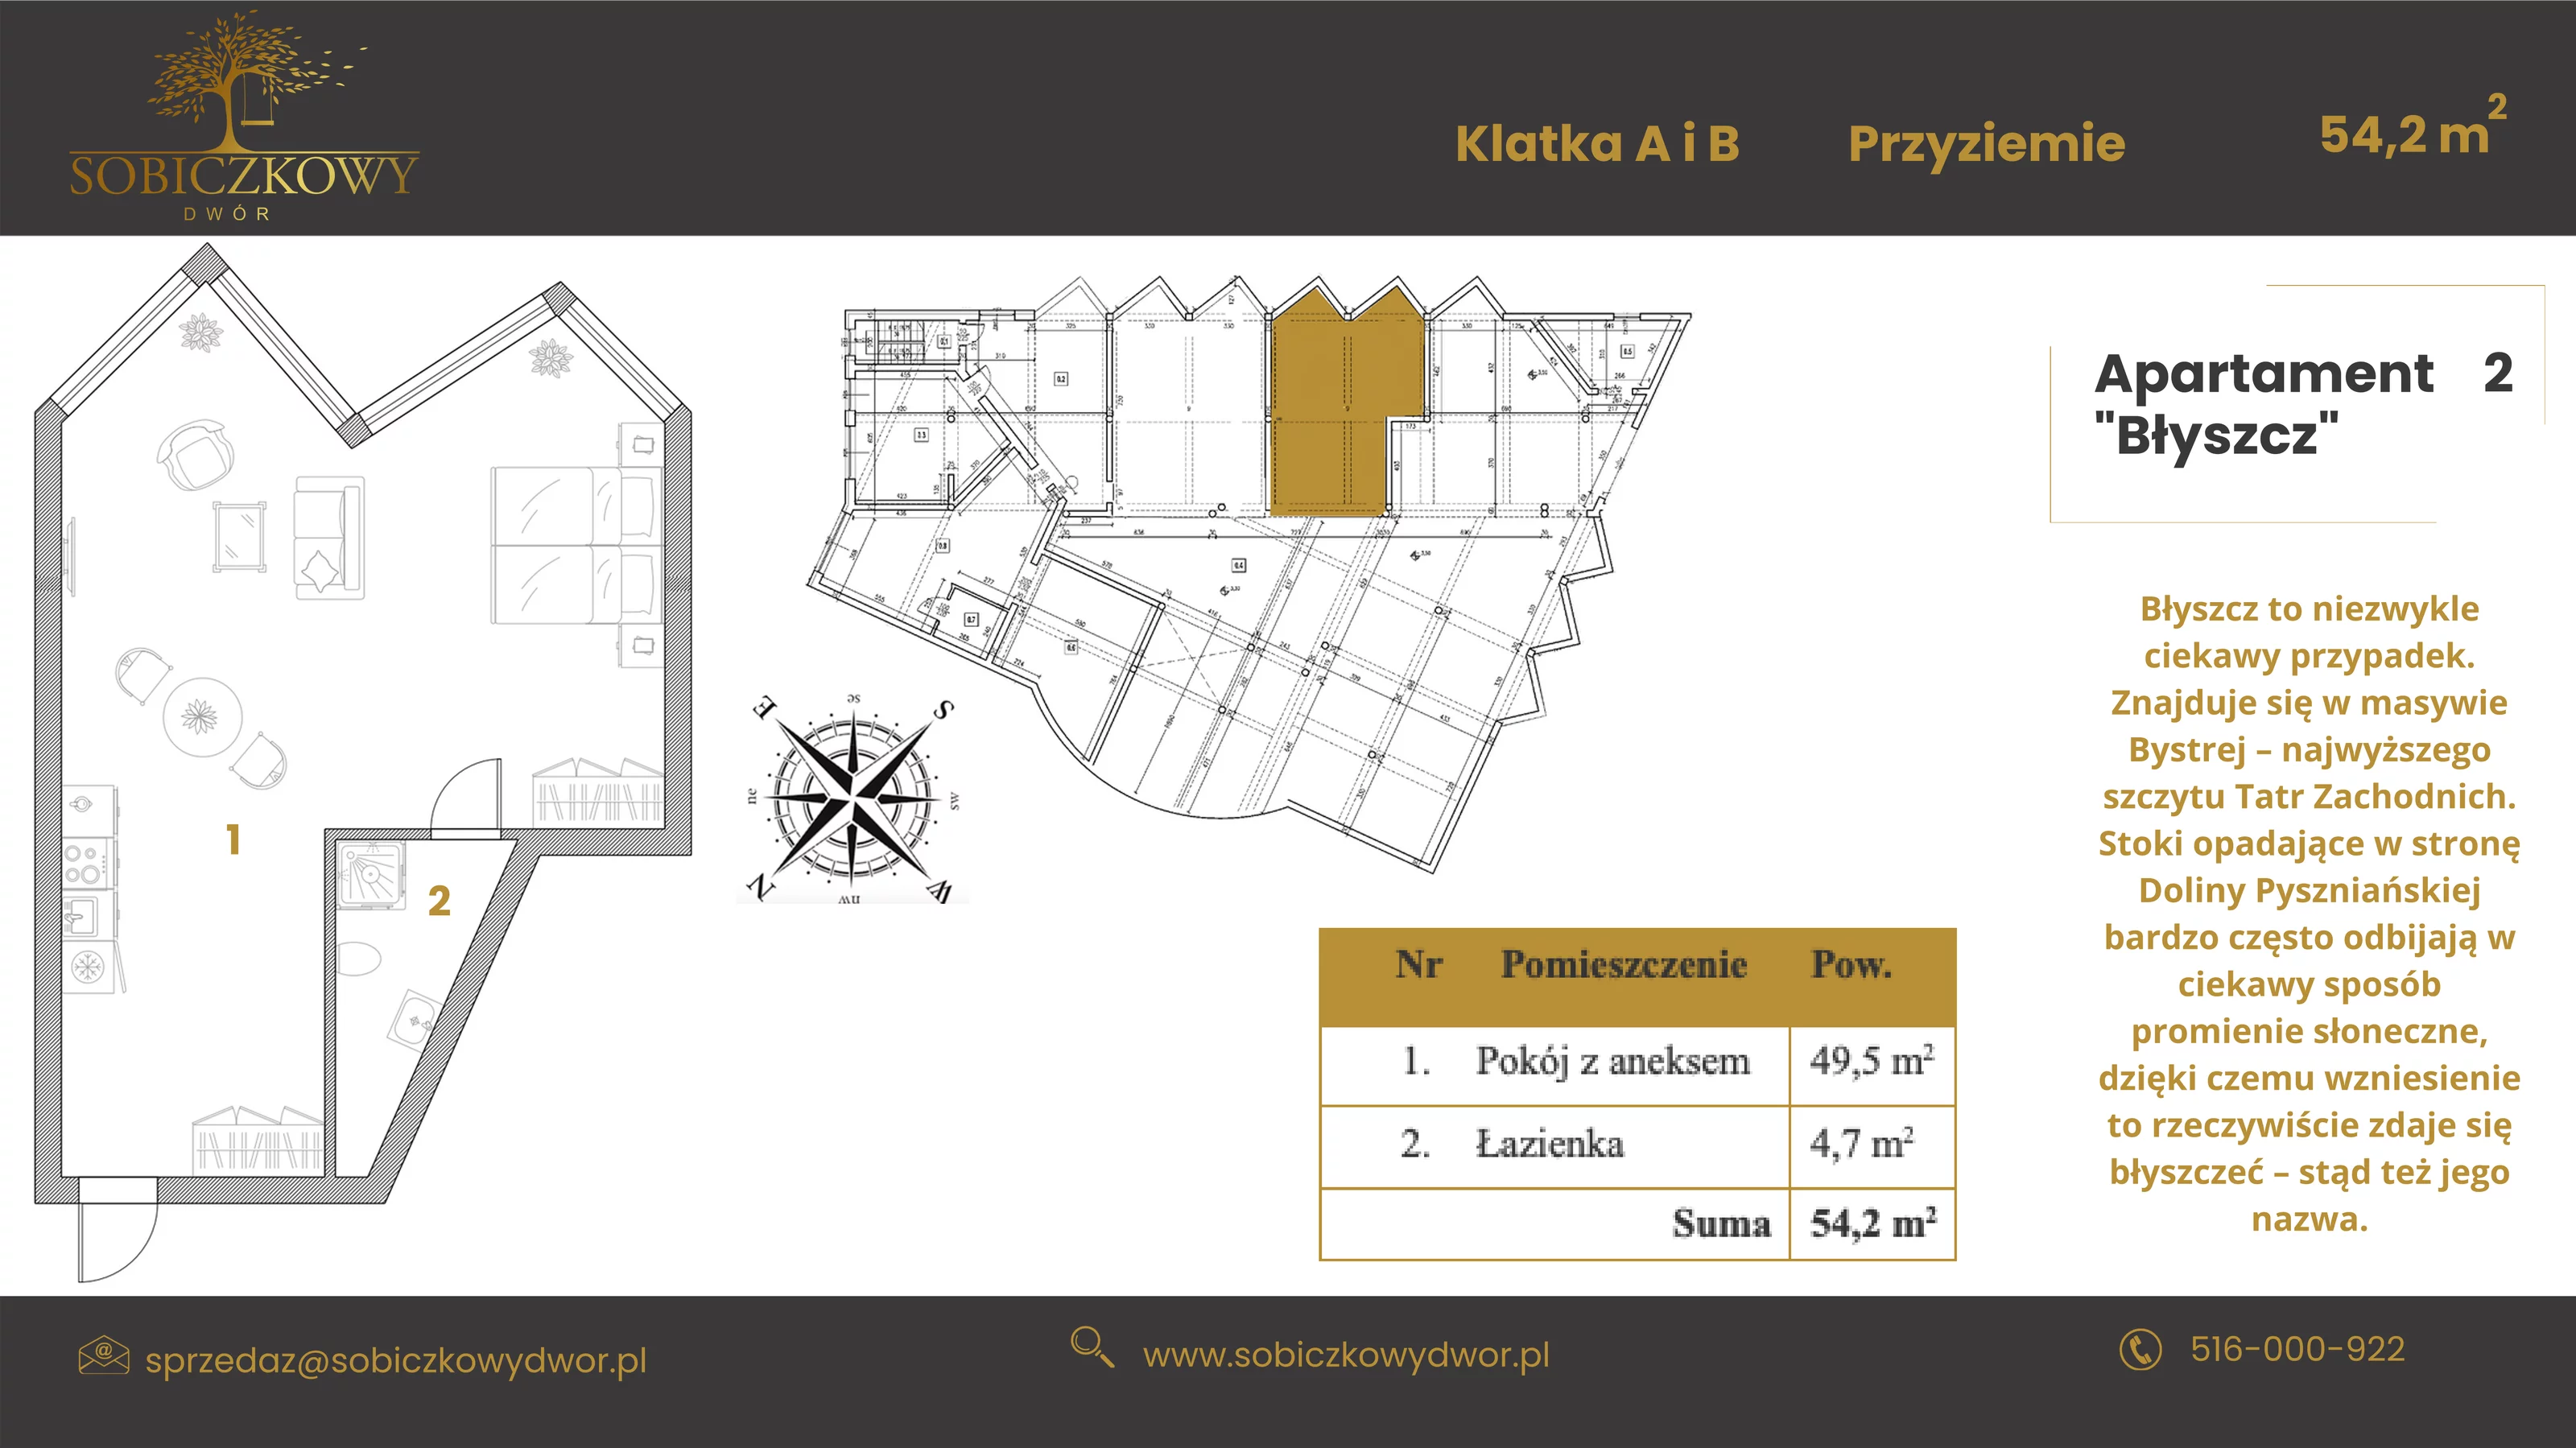 Apartament 54,20 m², poziom -1, oferta nr 2 "Błyszcz", Sobiczkowy Dwór, Kościelisko, ul. Sobiczkowa Bór 1